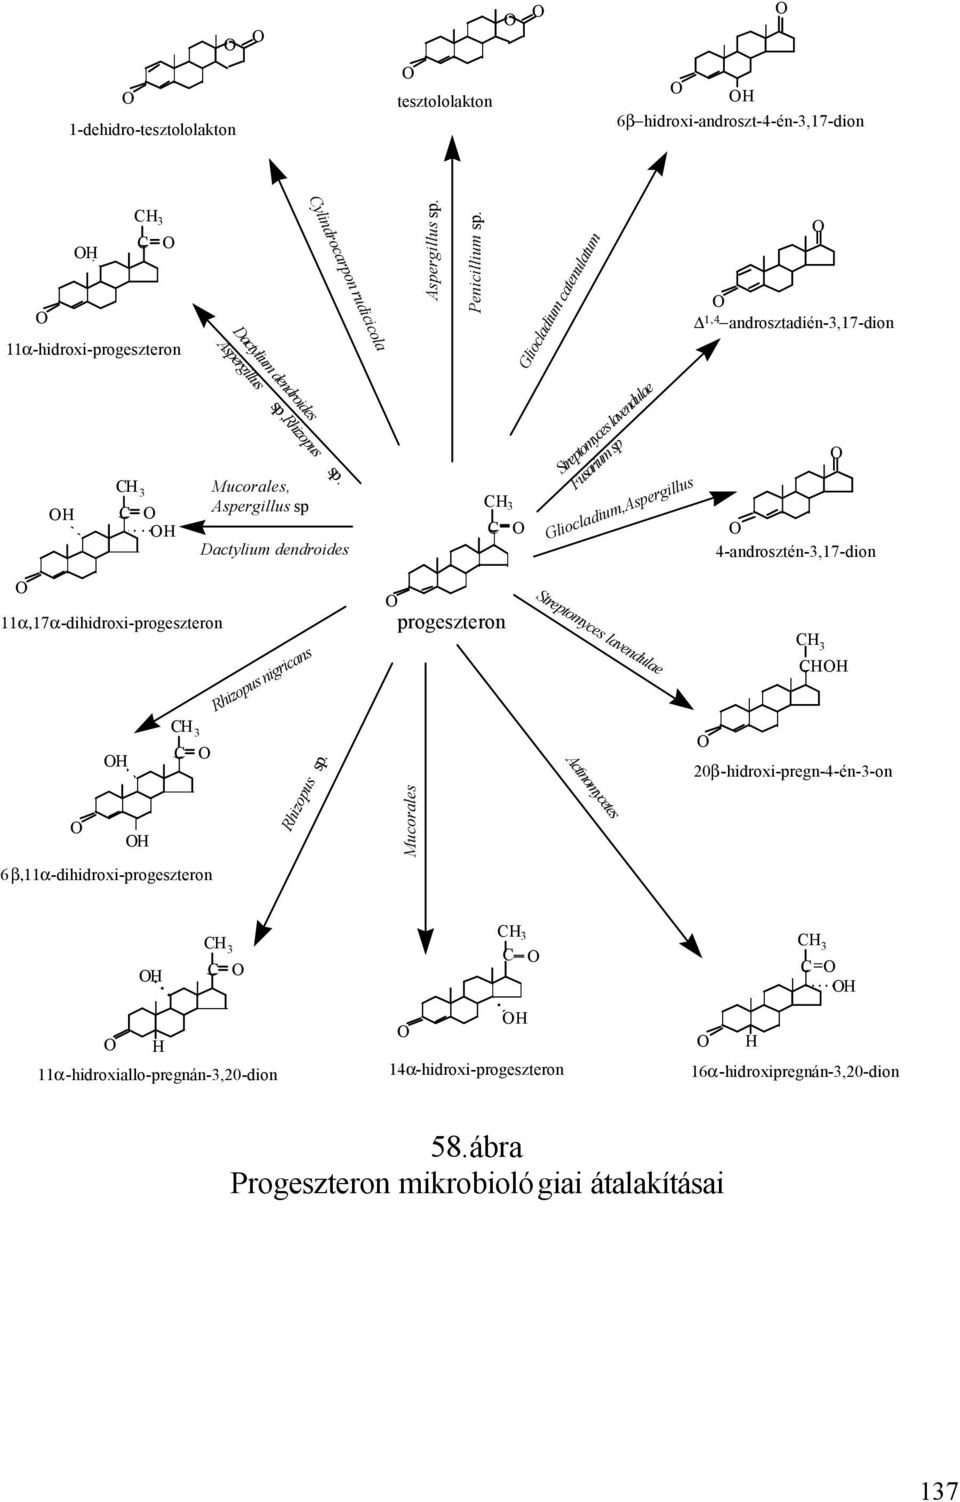 Mucorales, Aspergillus sp Dactylium dendroides 3 Streptomyces lavendulae Fusarium sp Gliocladium,Aspergillus 4-androsztén-3,17-dion 11α,17α-dihidroxi-progeszteron Rhizopus nigricans